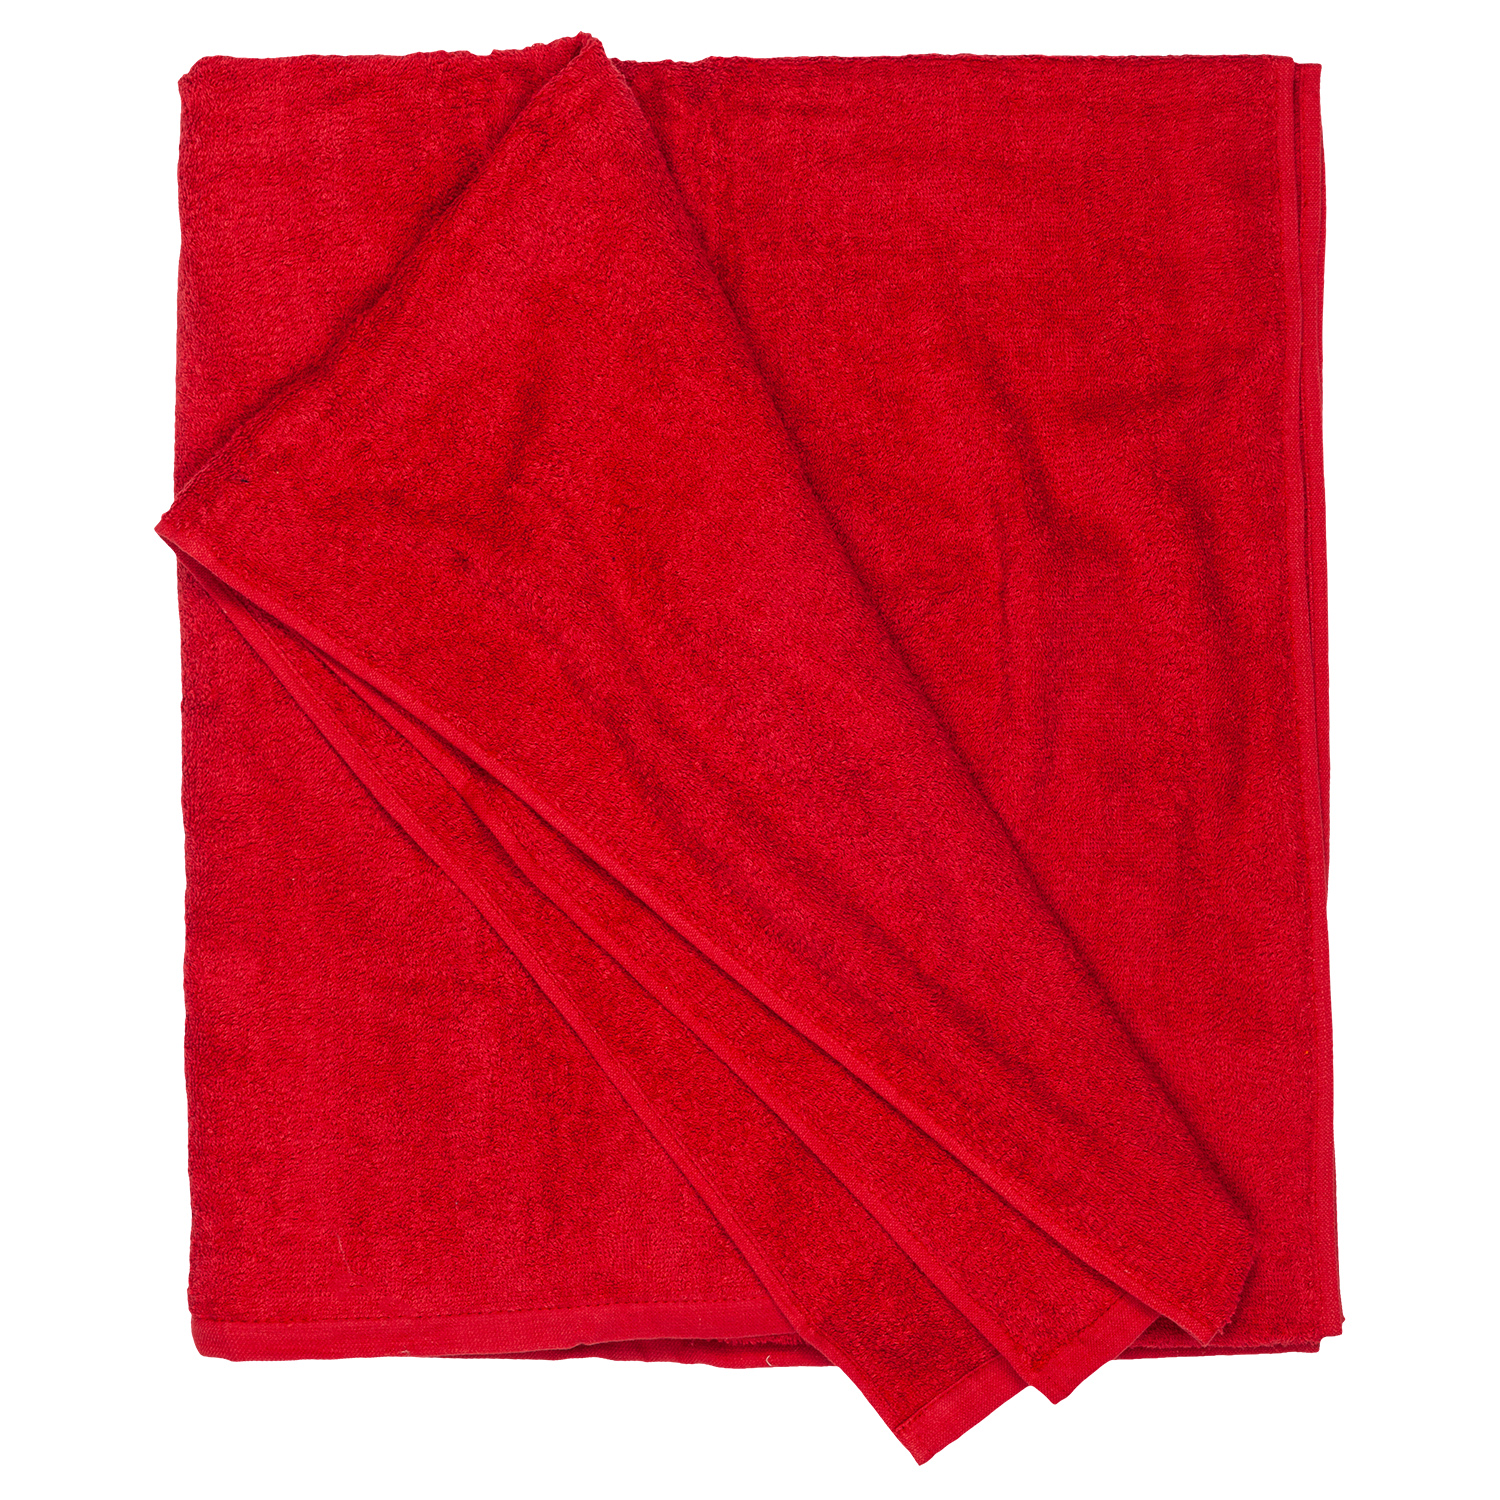 XXL Strandtuch HELSINKI in rot von Adamo in großen Größen bis 155x220 cm